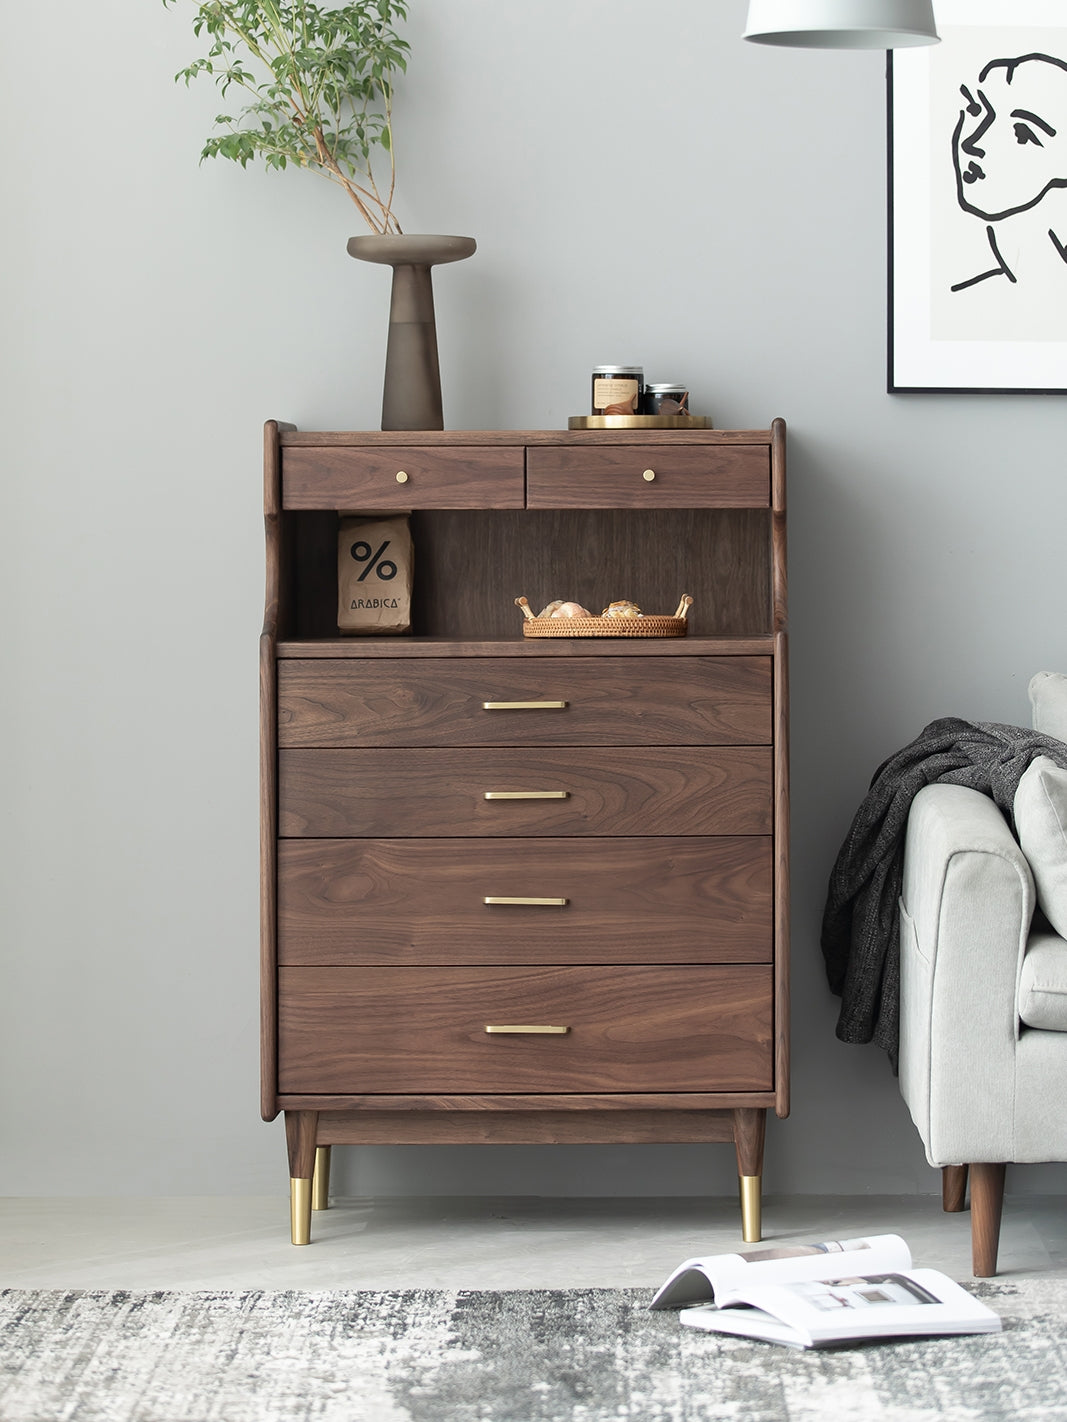 gabinetes de madera personalizados, gabinetes de madera natural, gabinetes de madera maciza